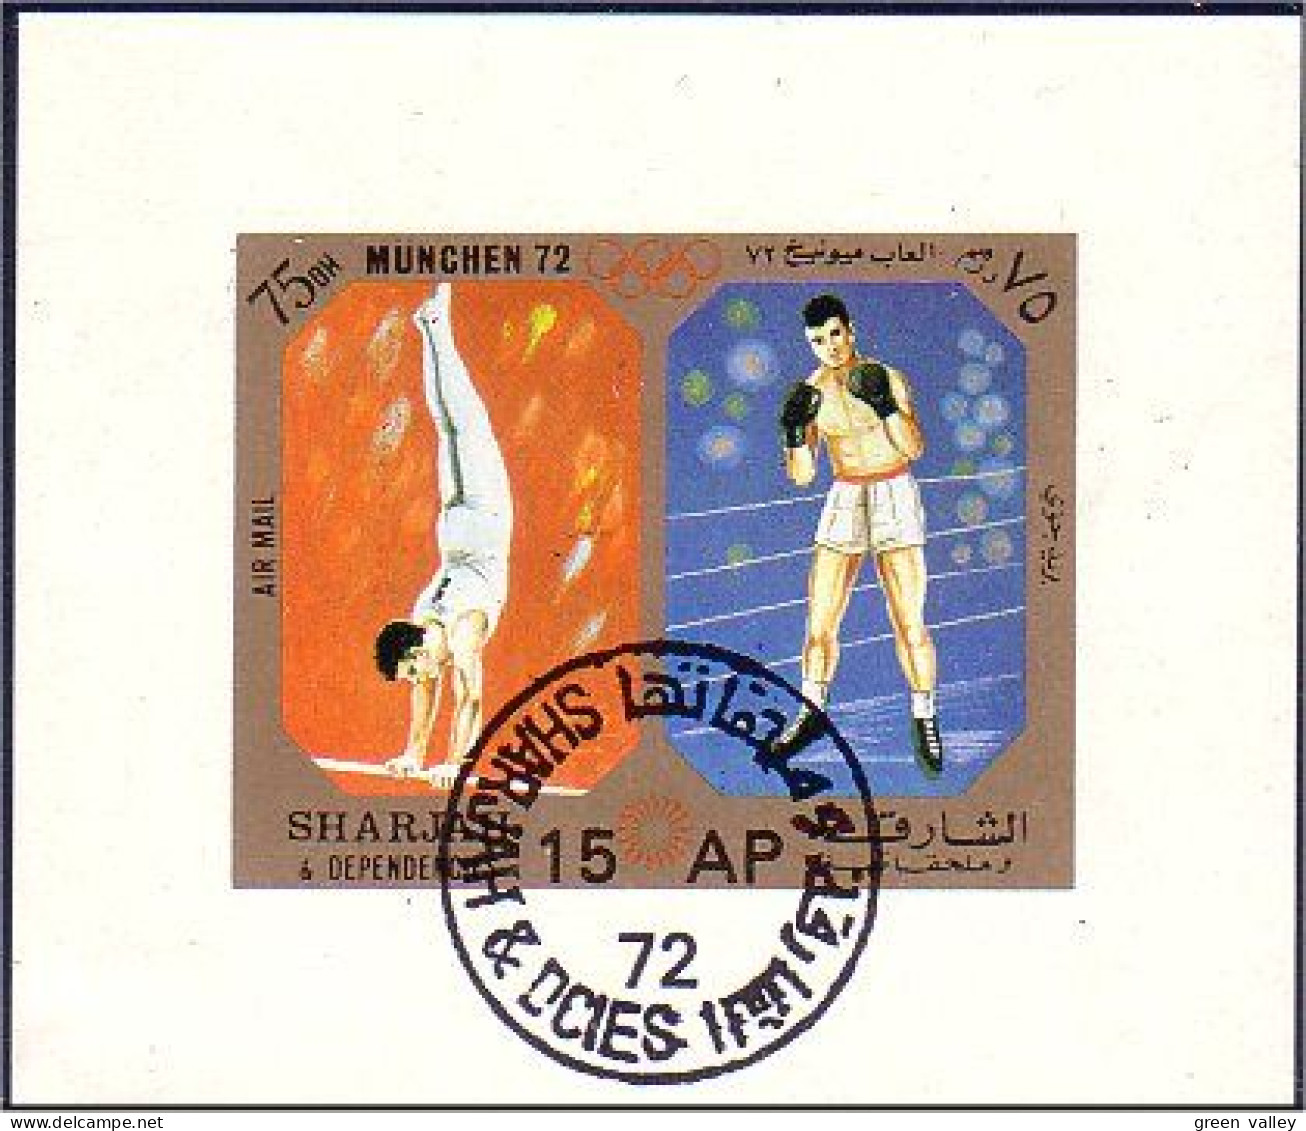 804 Sharjah Boxe Et Gymnastique Bloc Feuillet Souvenir Sheet (SHA-2) - Boxeo